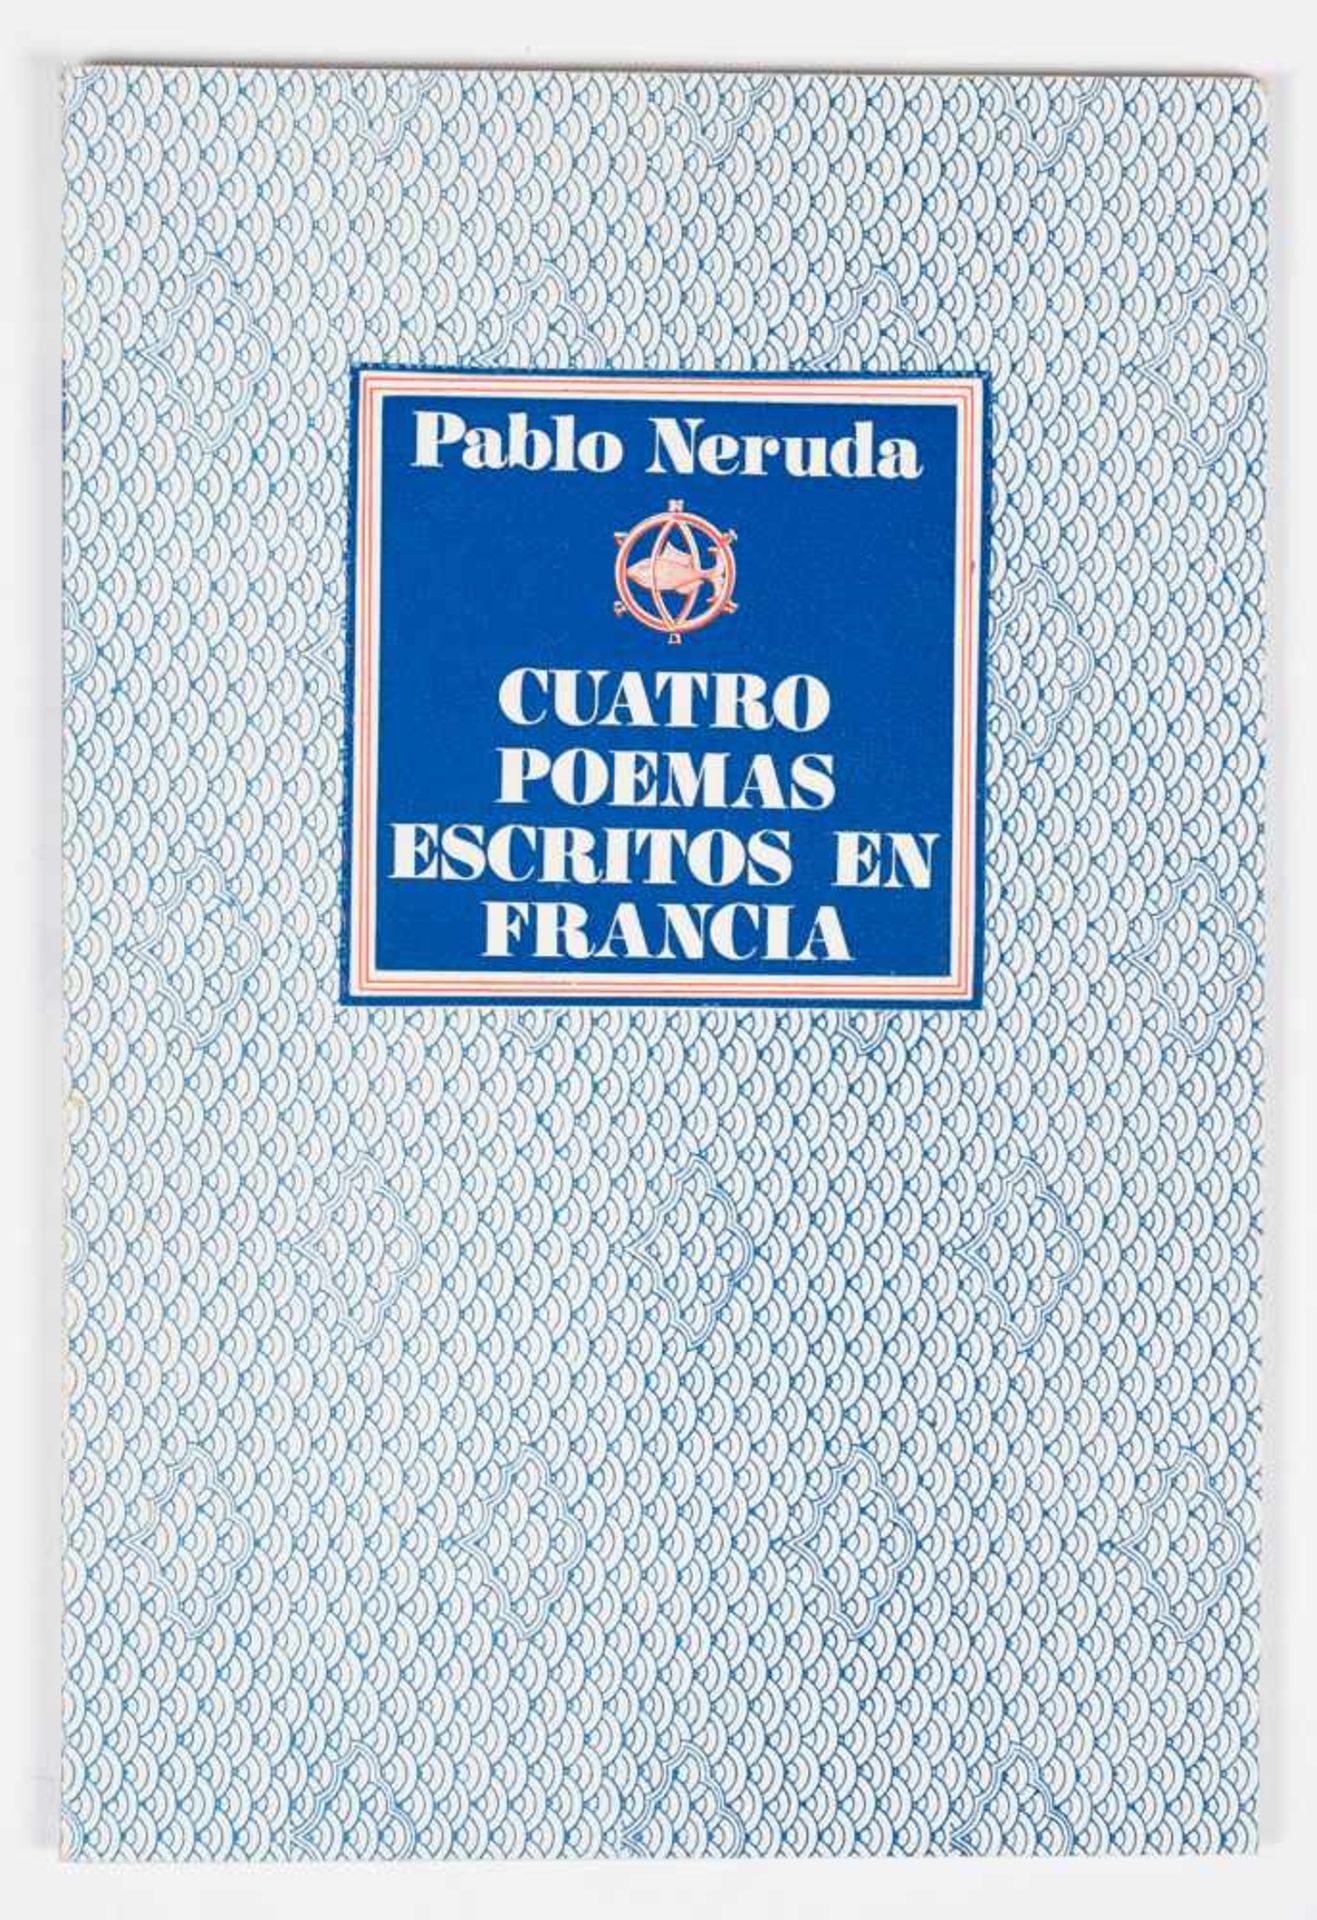 Neruda, Pablo. "Cuatro poemas escritos en Francia". (Four poems written in France). 1st edition.